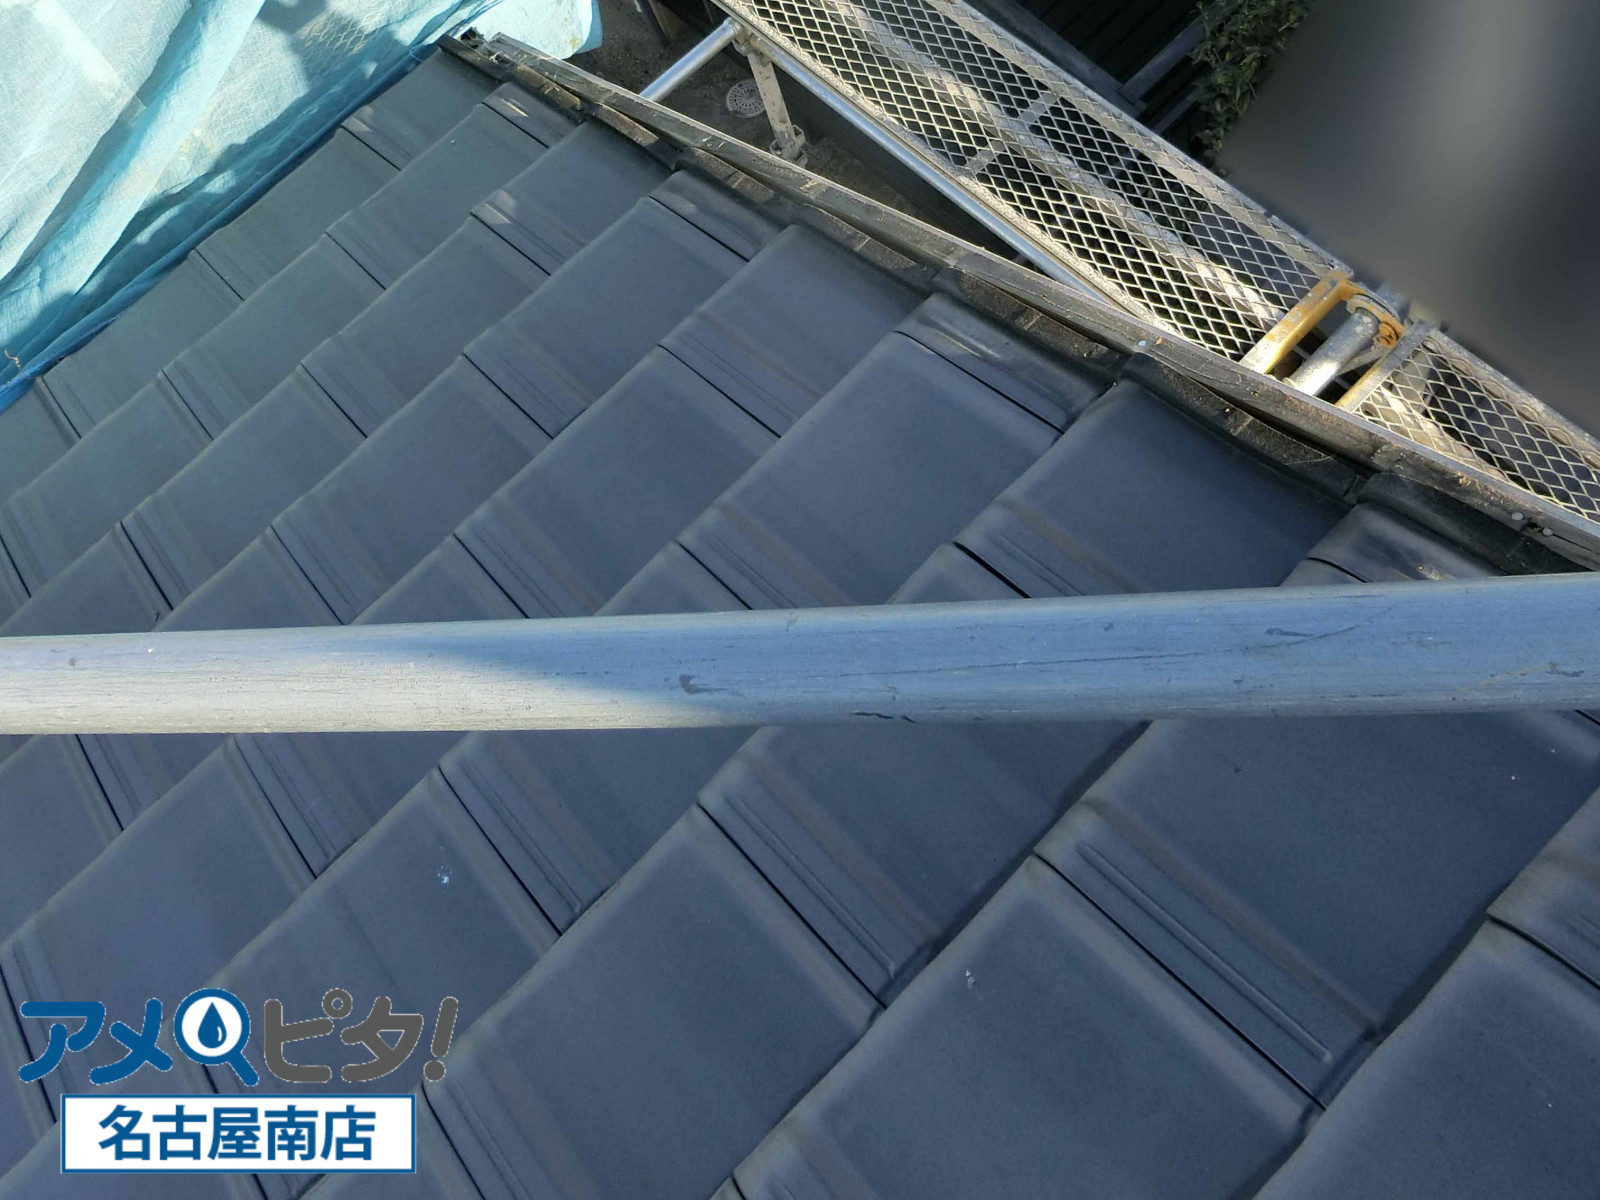 名古屋市緑区にて平板瓦で切妻屋根のケラバ部の水切り板金不良施工と雨漏りの危険性